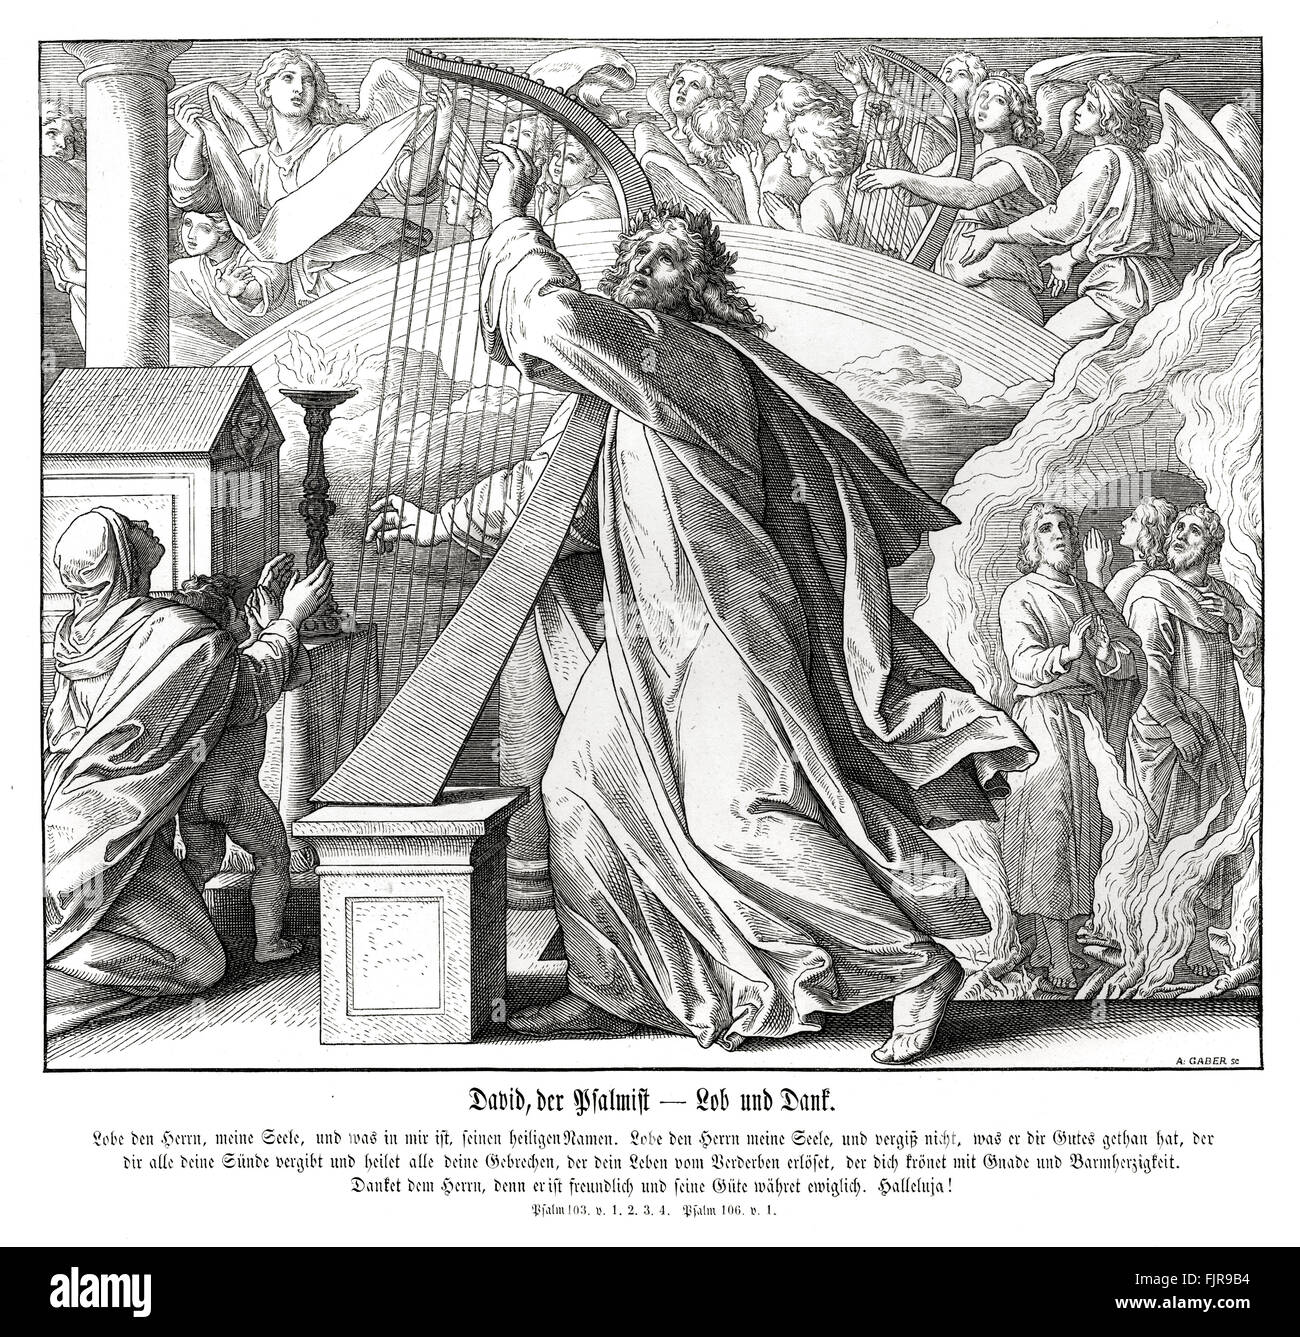 David der Psalmist, Buch der Psalmen - Lob und Dank, Psalm 103 und 106, 1852-60 Illustration von Julius Schnorr von Carolsfeld Stockfoto